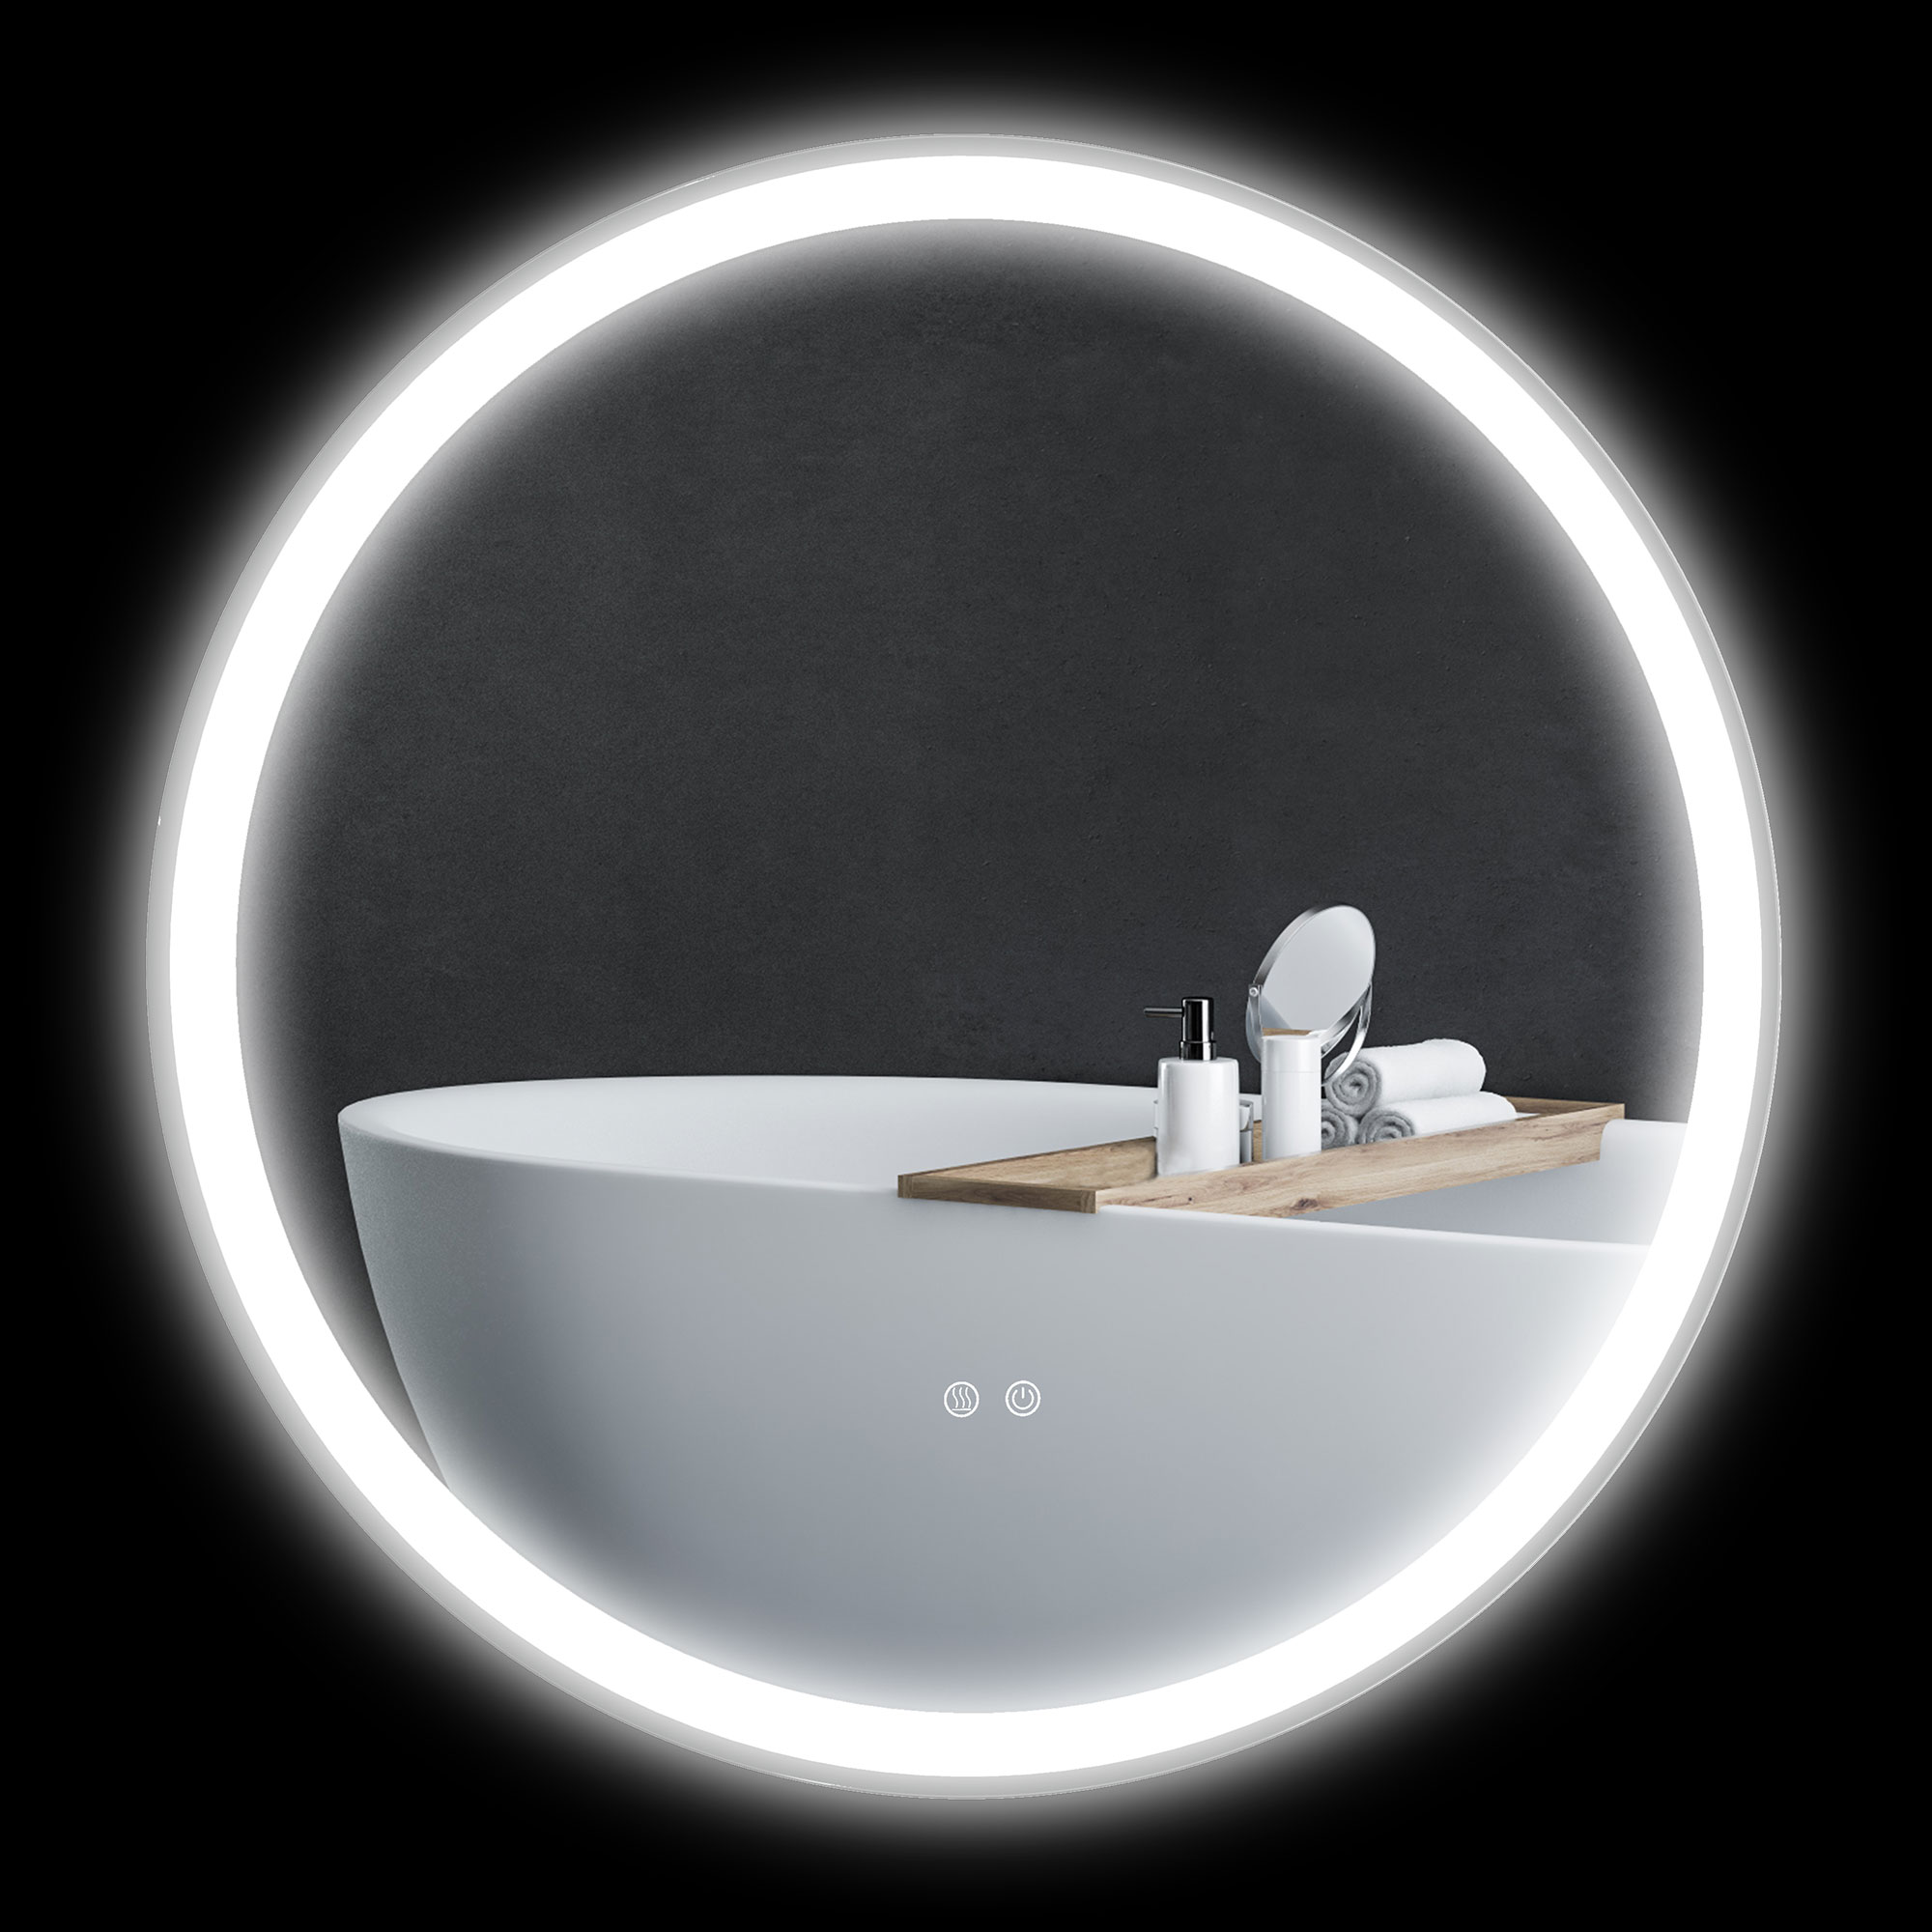 kleankin miroir rond lumineux led pour salle de bain Ã˜ 80 cm mural avec Ã©clairage 3 couleurs interrupteur tactile 46w blanc argent aosom france